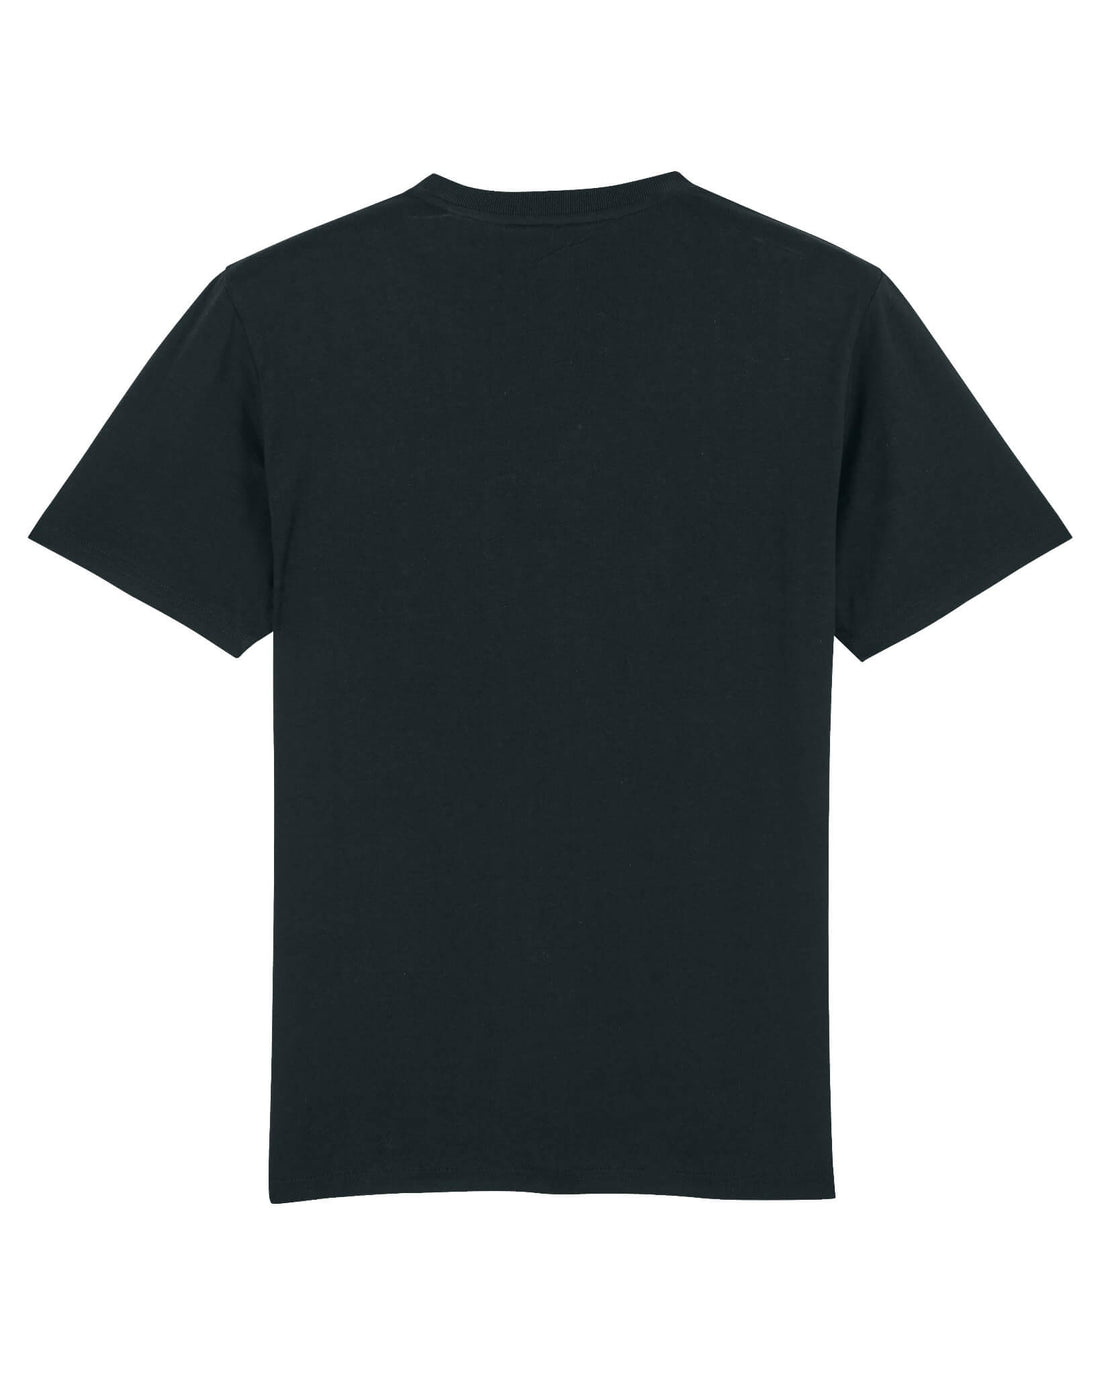 Black Skater T-Shirt, Skater Boy Back Print